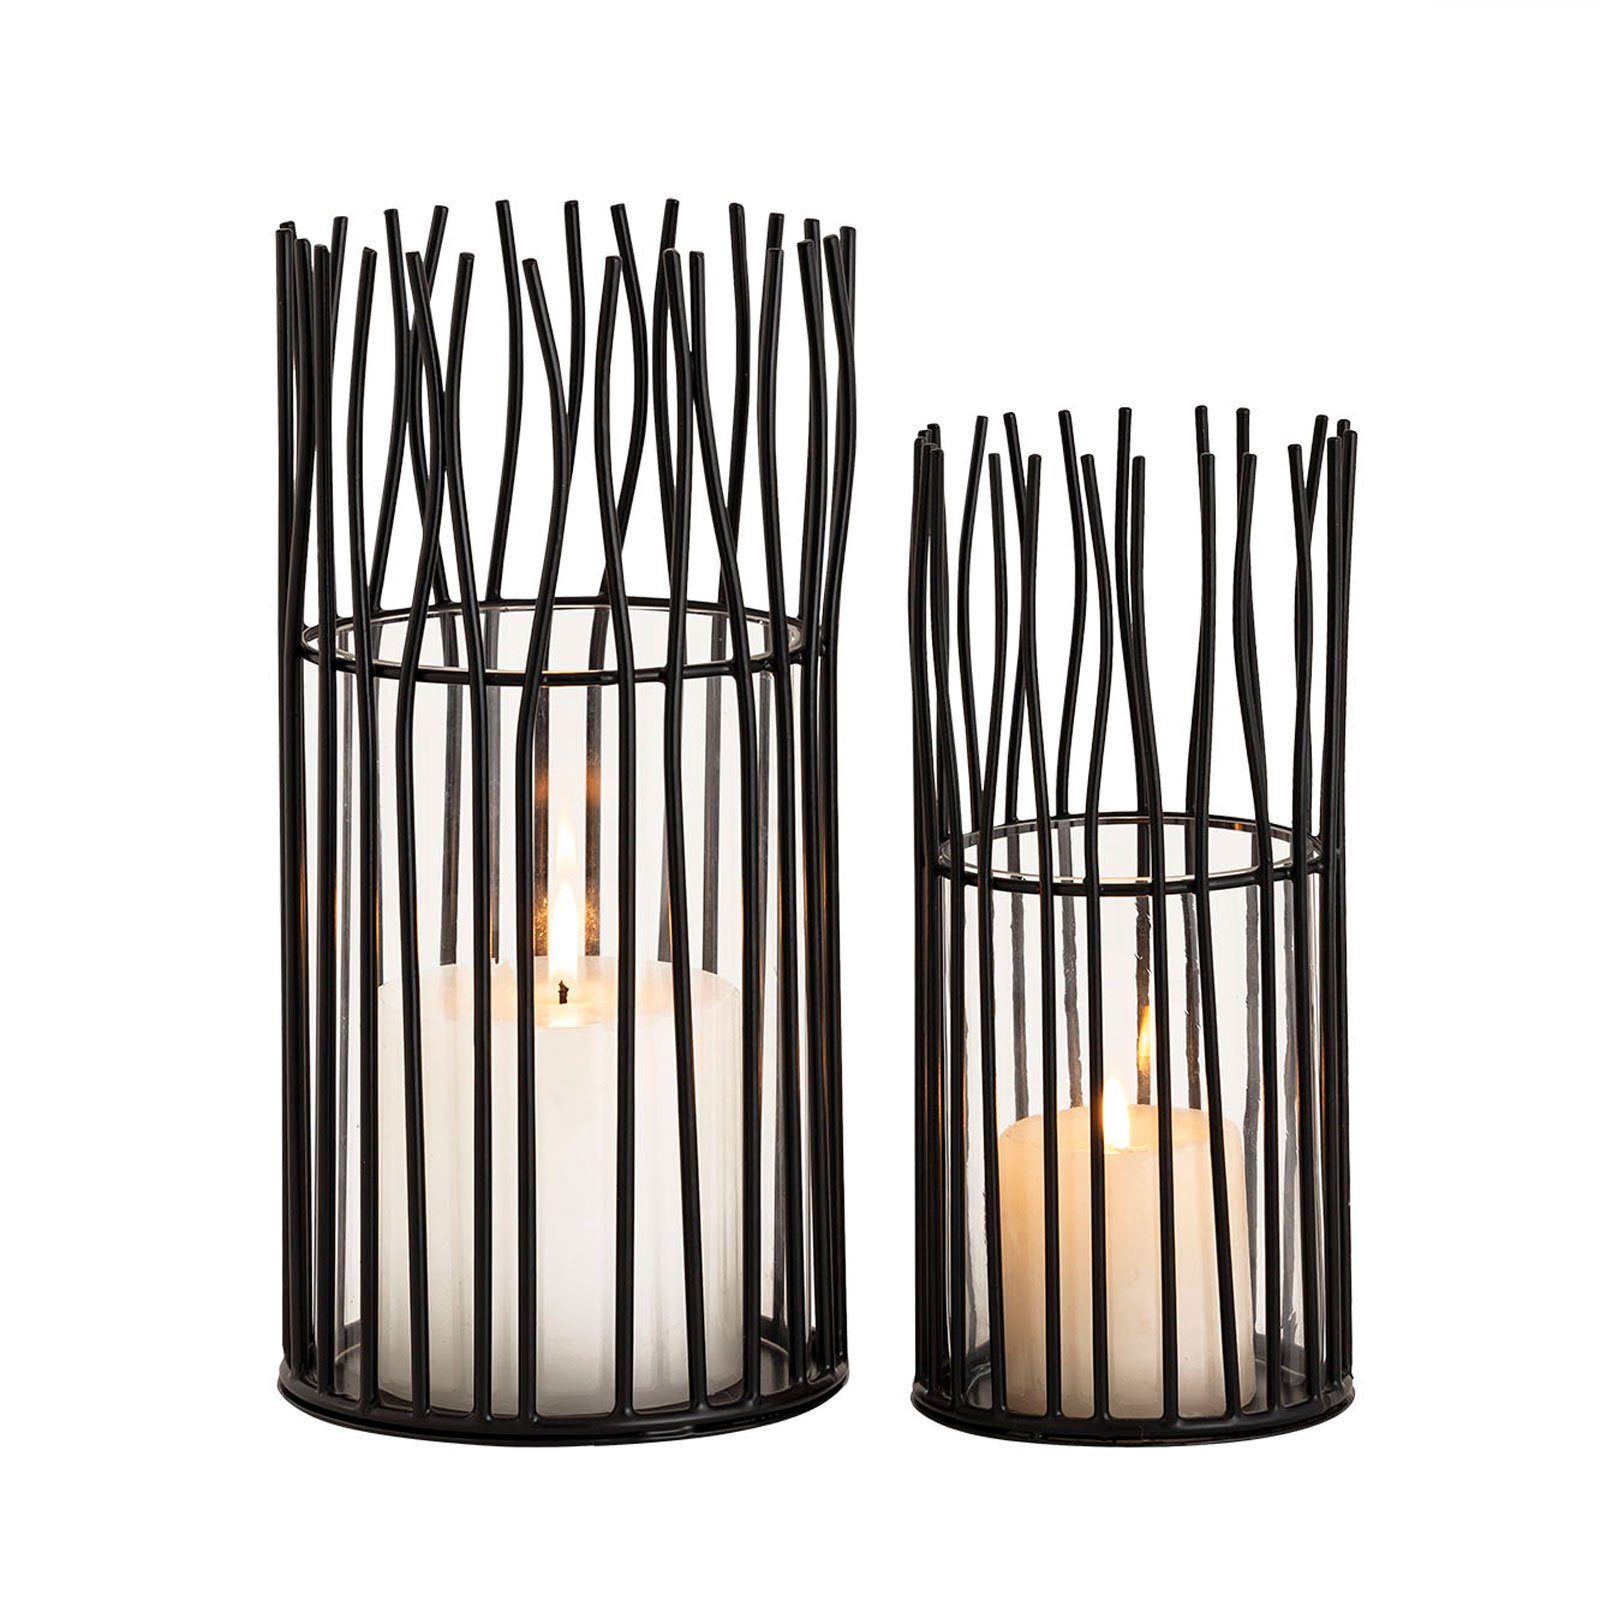 Casamia Windlicht Kerzenhalter Set 2-teilig Teelichthalter Windlicht Loft schwarz o. sil schwarz matt